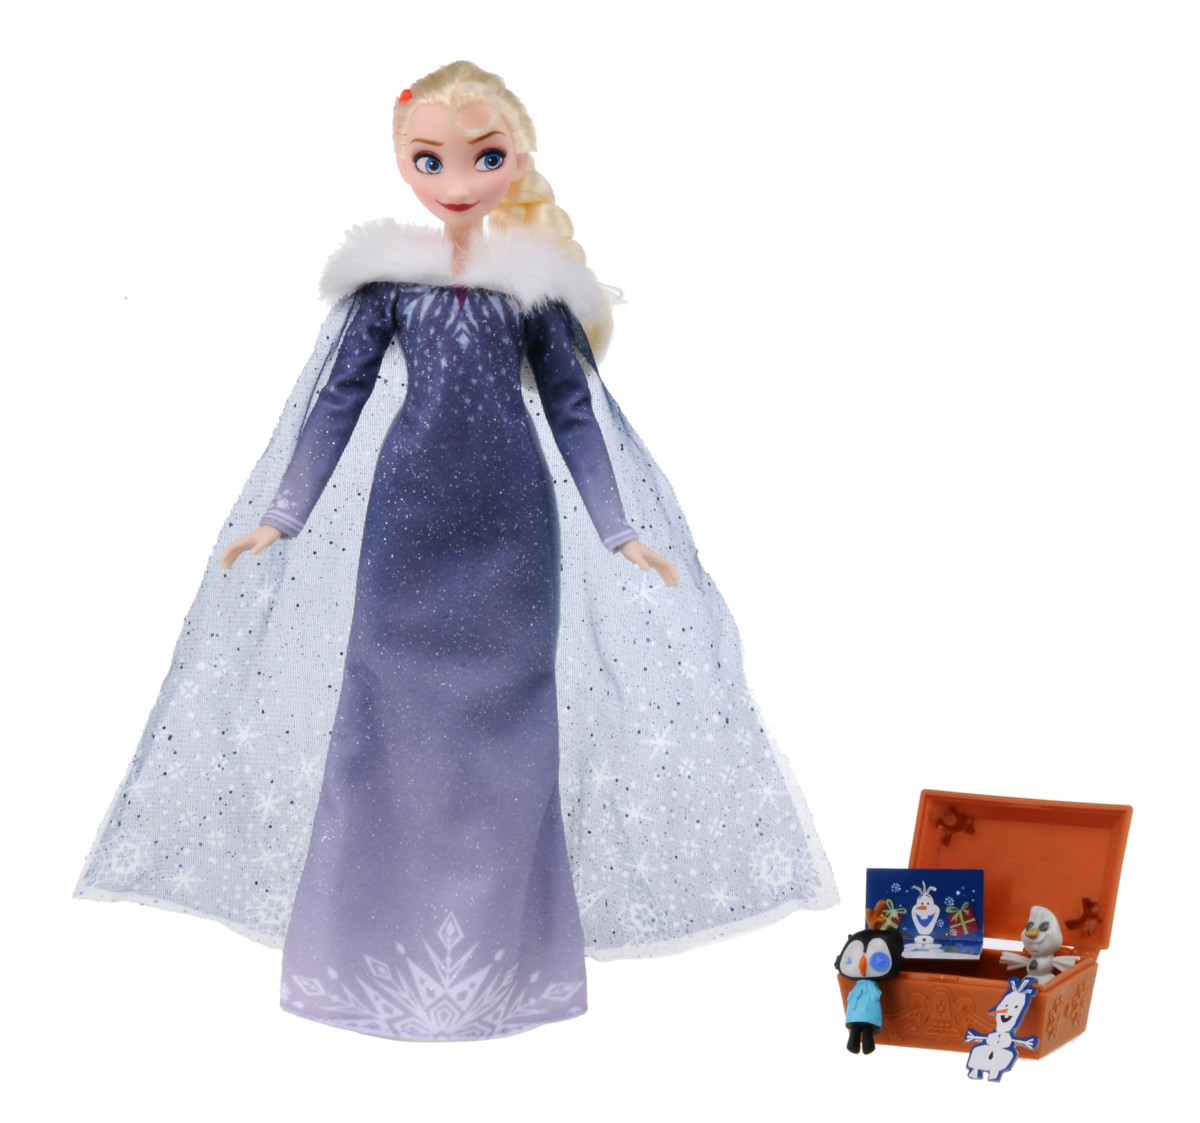 いつも一緒にいられるアナとエルサのお人形 タカラトミー ディズニーデザイン アナと雪の女王 家族の思い出 ドールシリーズ Dtimes